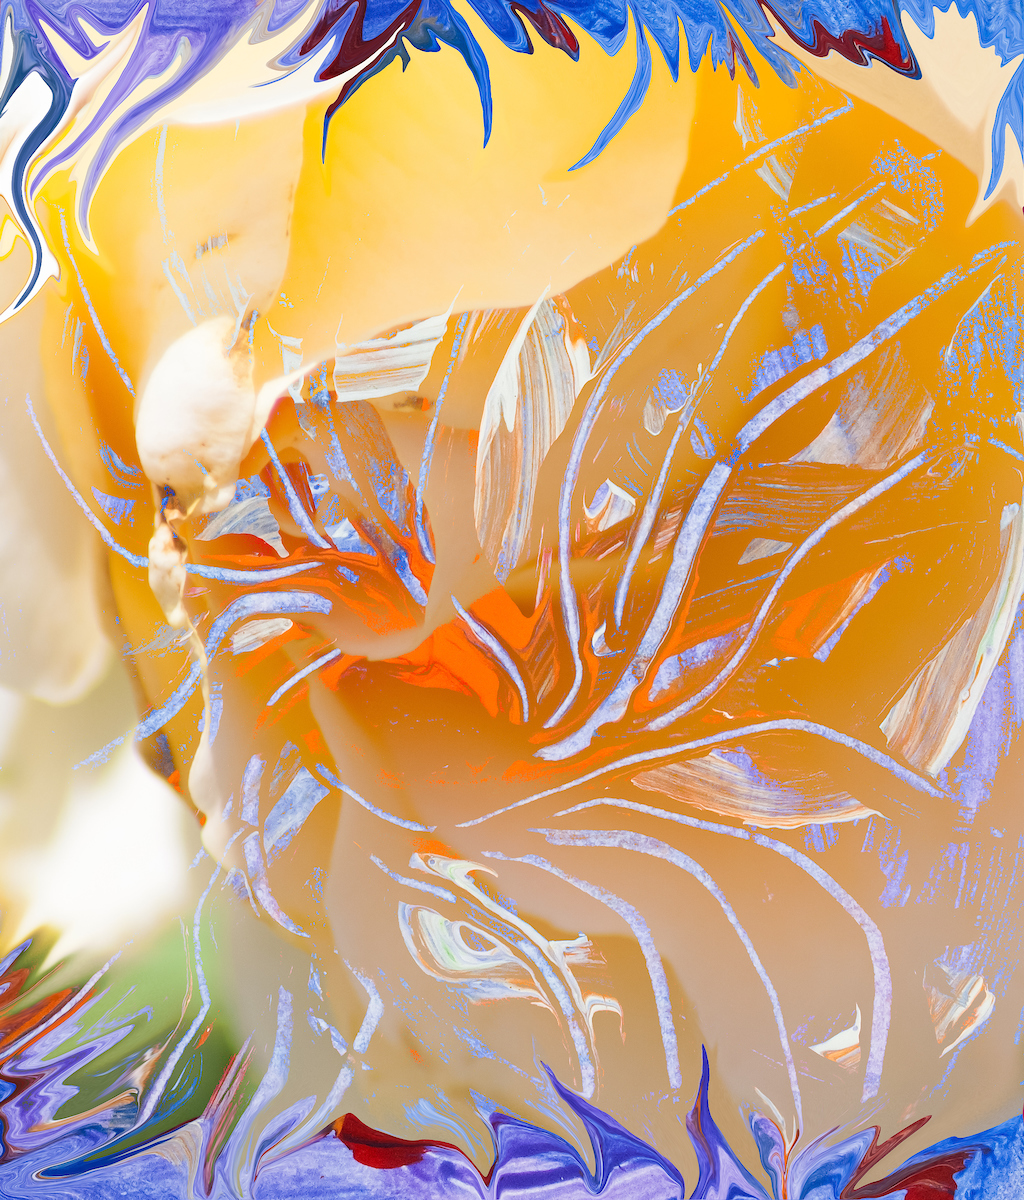 immagine di arte astratta dai colori caldi con forma simile a fiore con pistilli con forme astratte che si sviluppano da un nucleo di colore arancione